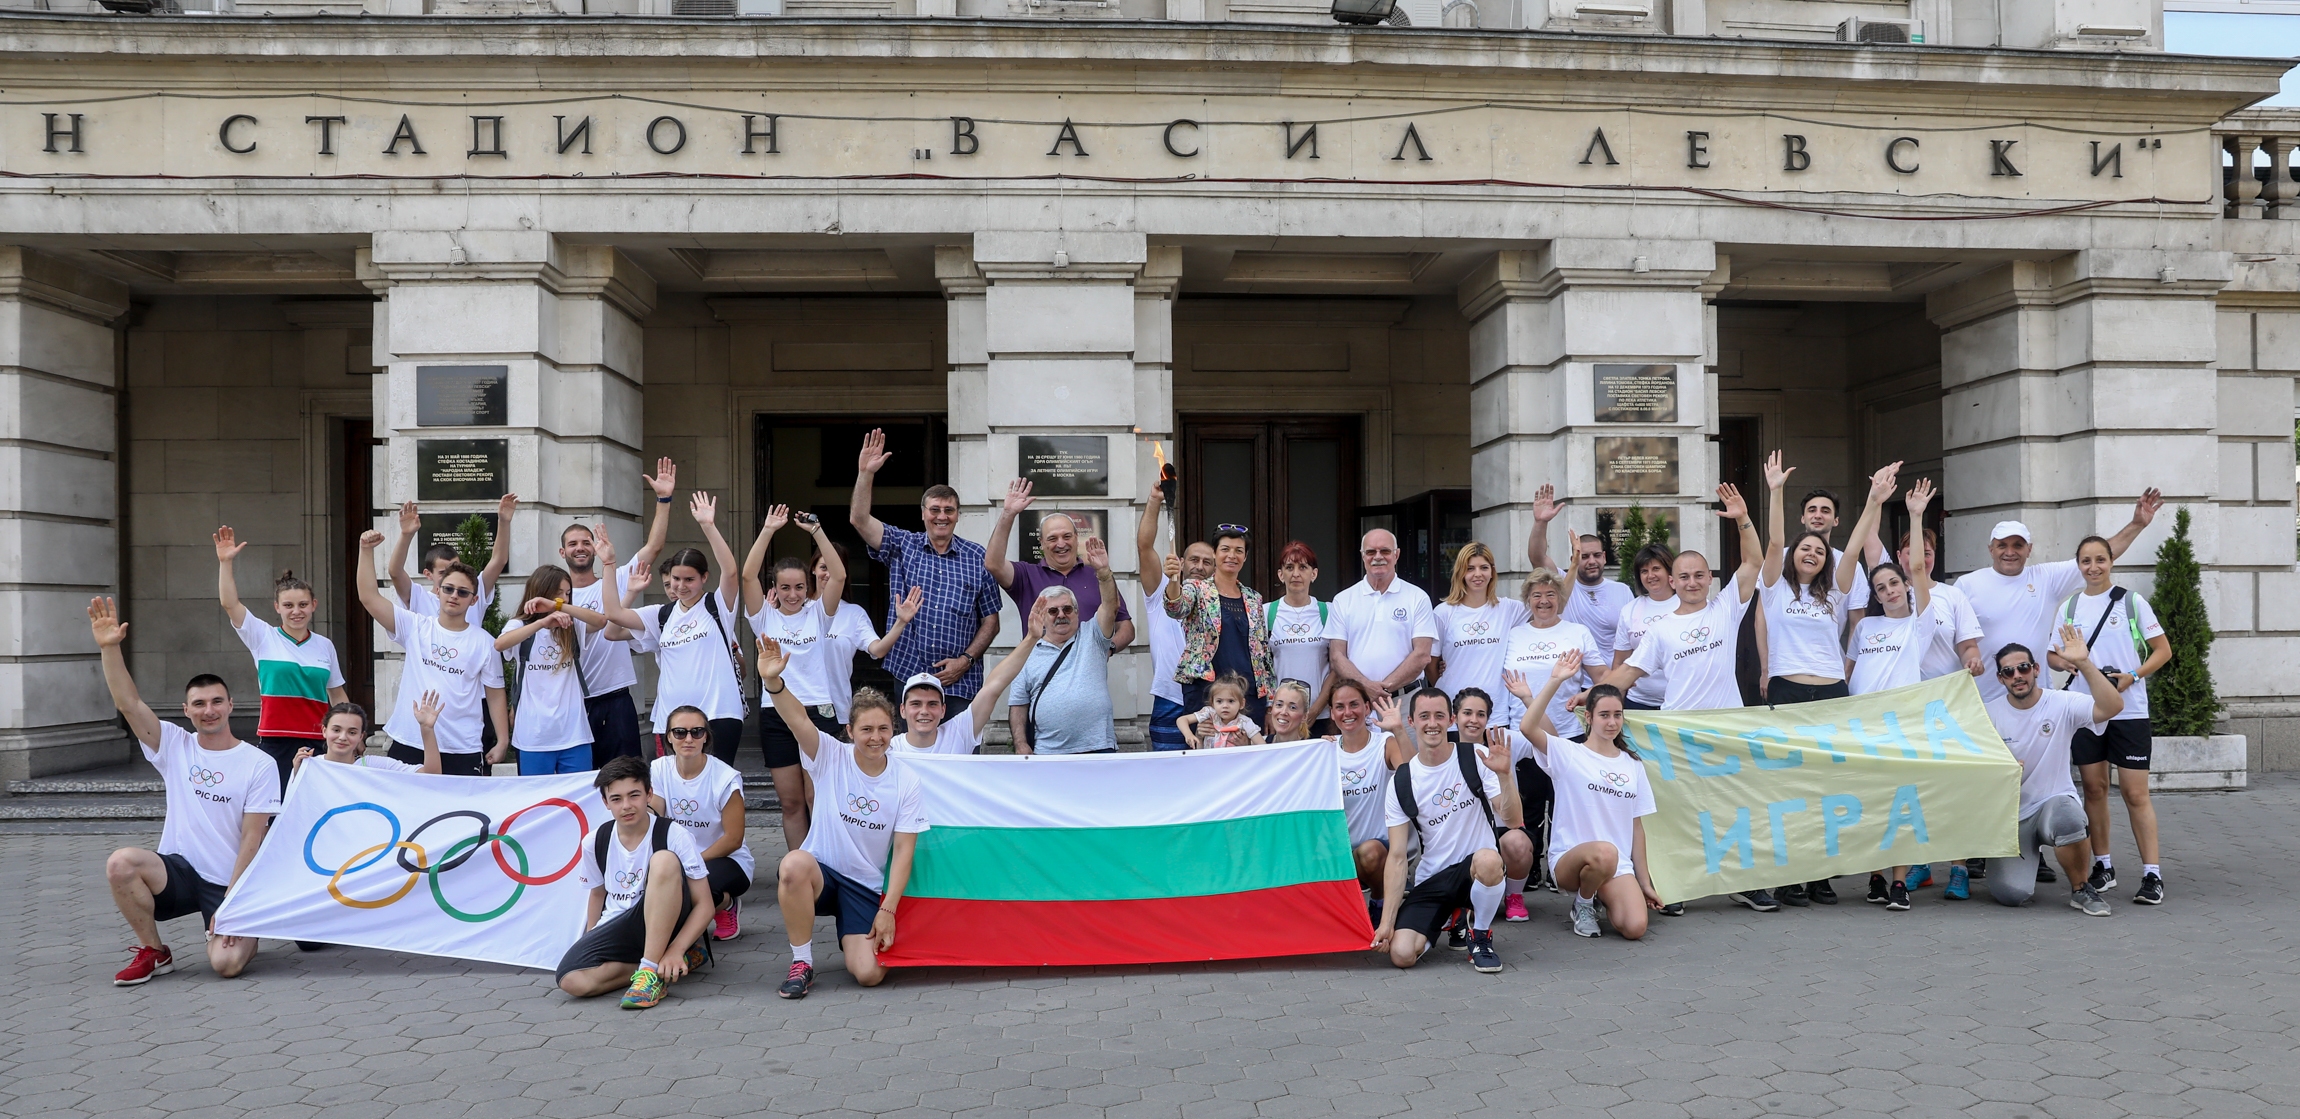 Българският олимпийски комитет по традиция отбелязва международния Олимпийски ден и